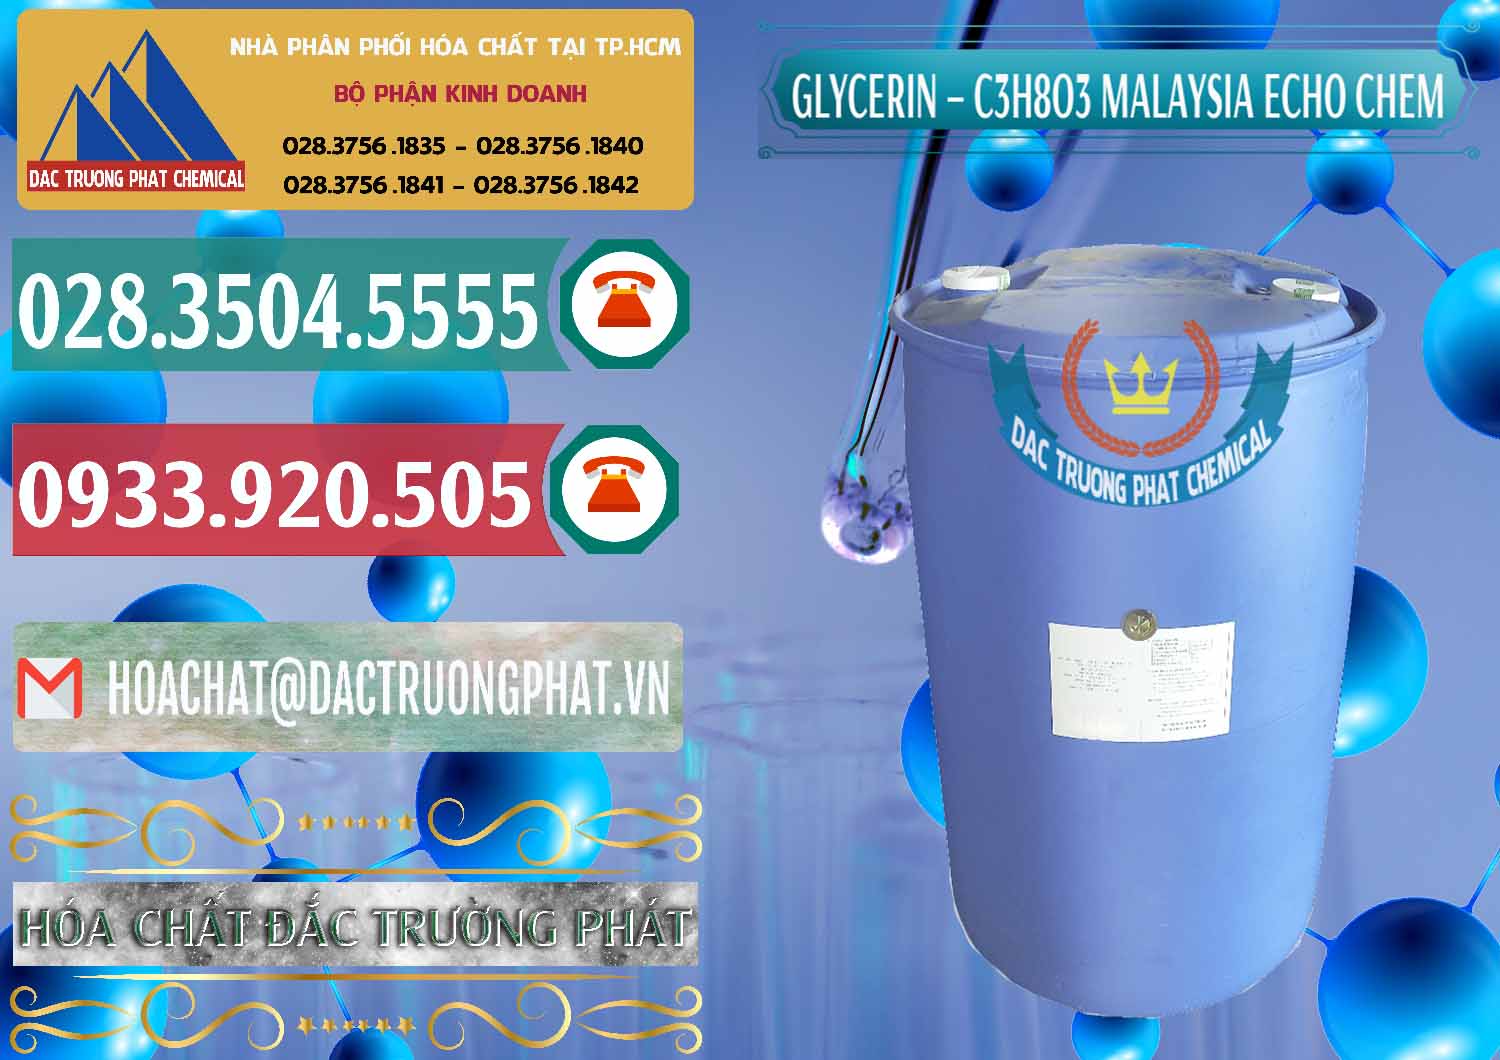 Đơn vị chuyên nhập khẩu và bán C3H8O3 - Glycerin 99.7% Echo Chem Malaysia - 0273 - Cty phân phối và bán hóa chất tại TP.HCM - muabanhoachat.vn